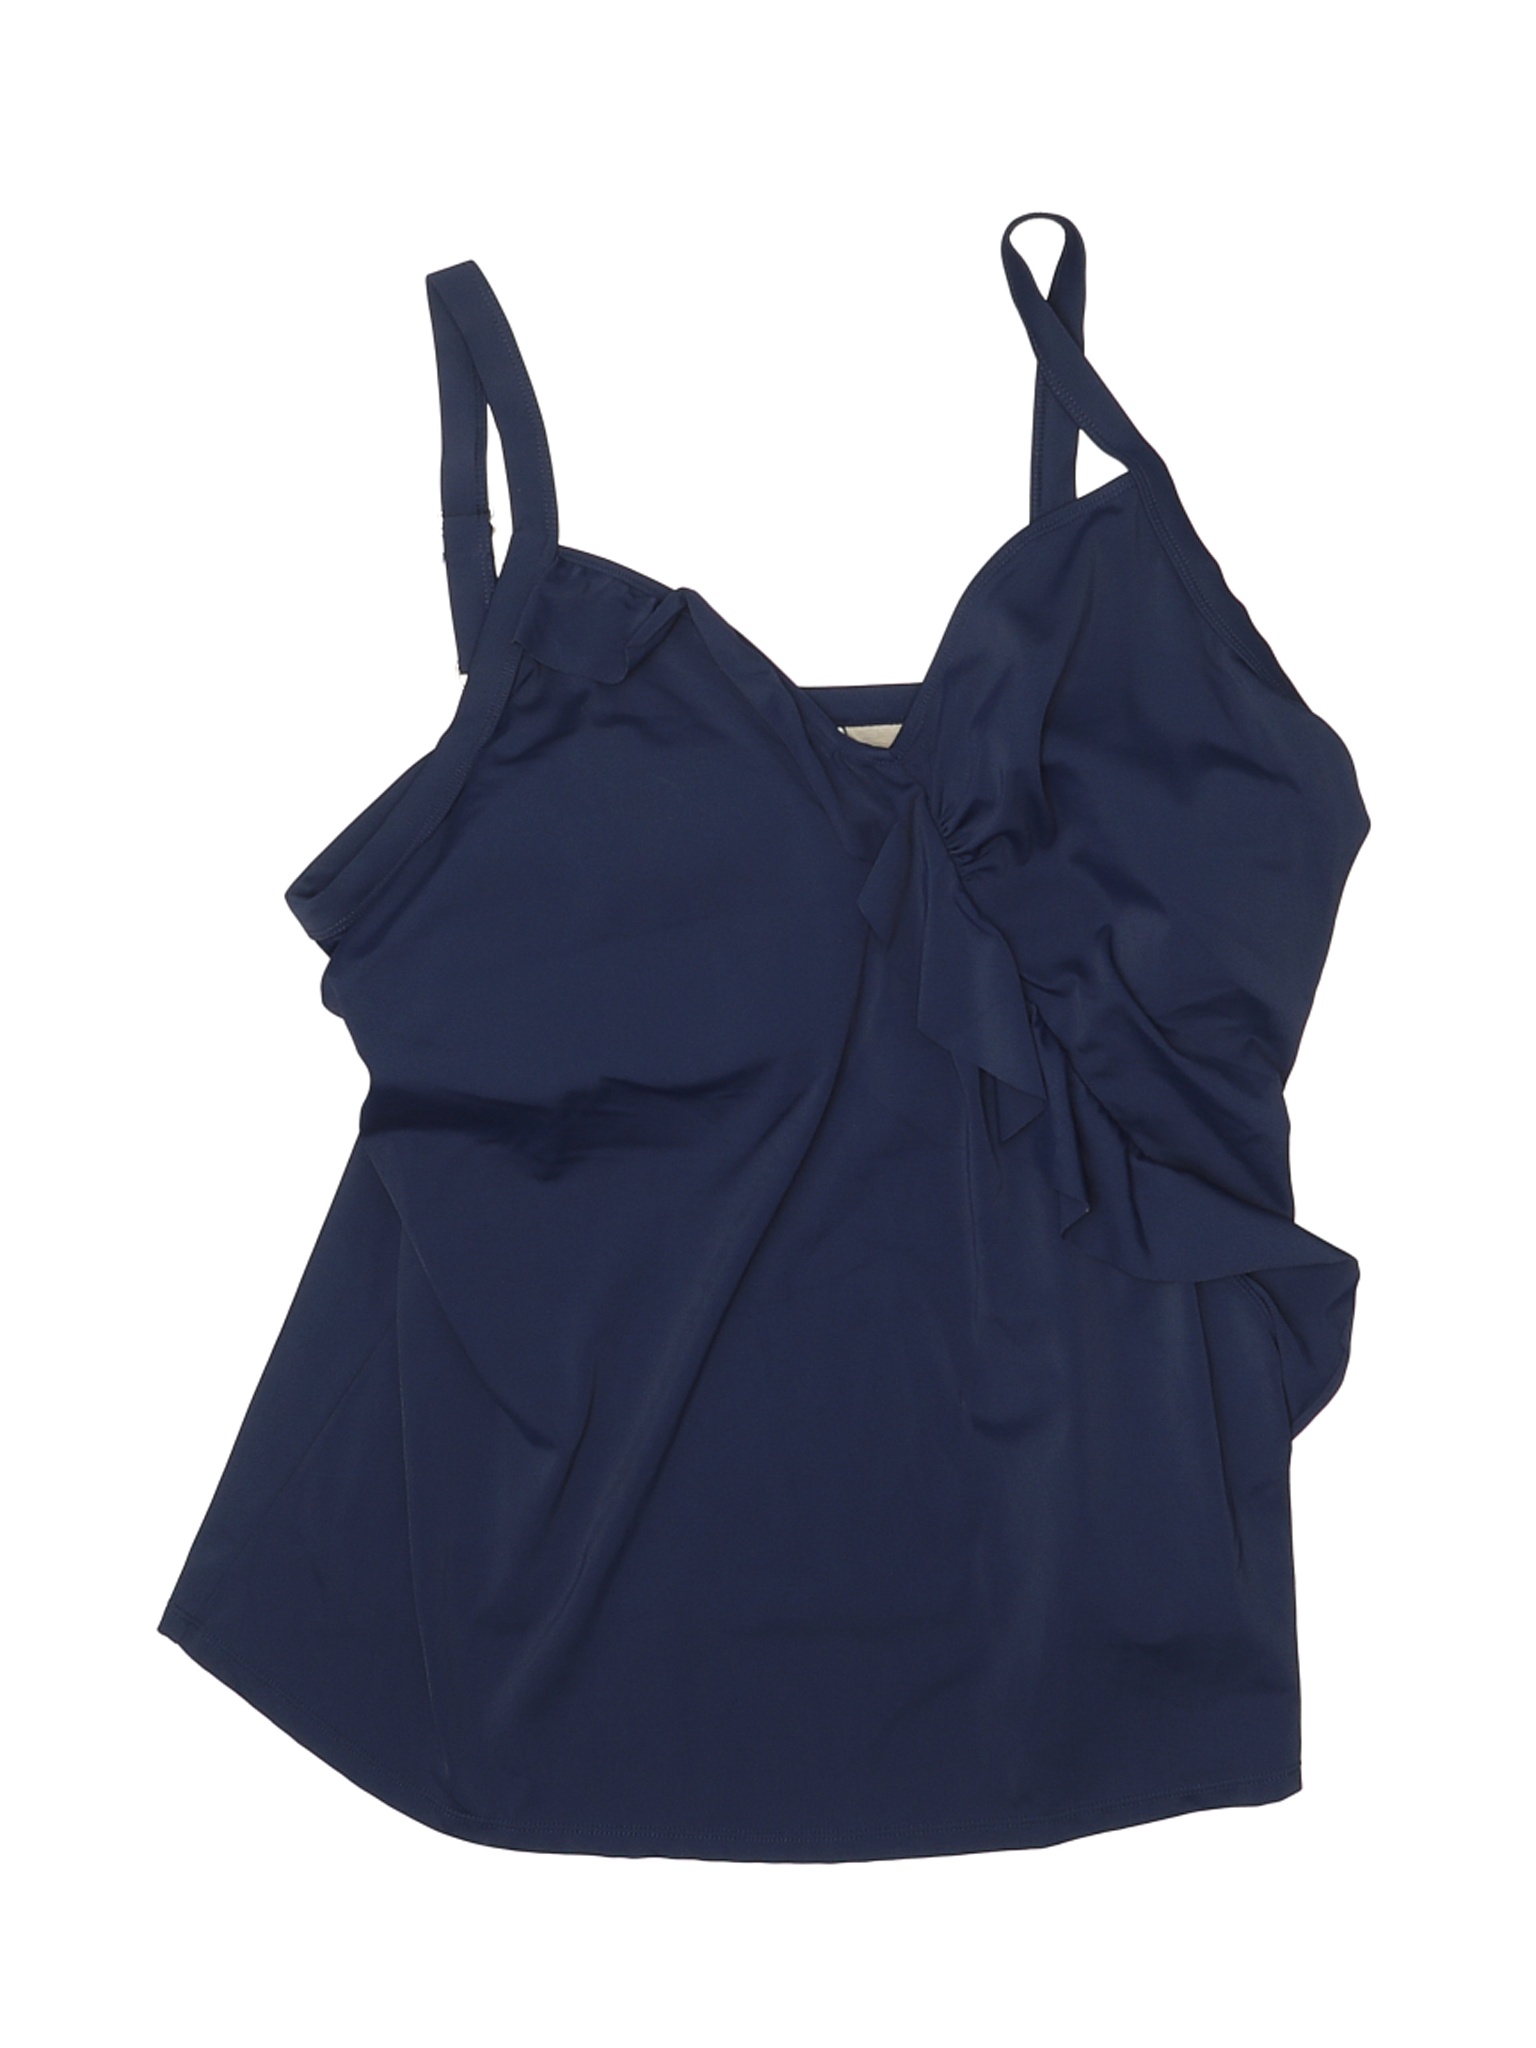 SWIM 365 Women Blue Swimsuit Top 20 Plus | eBay